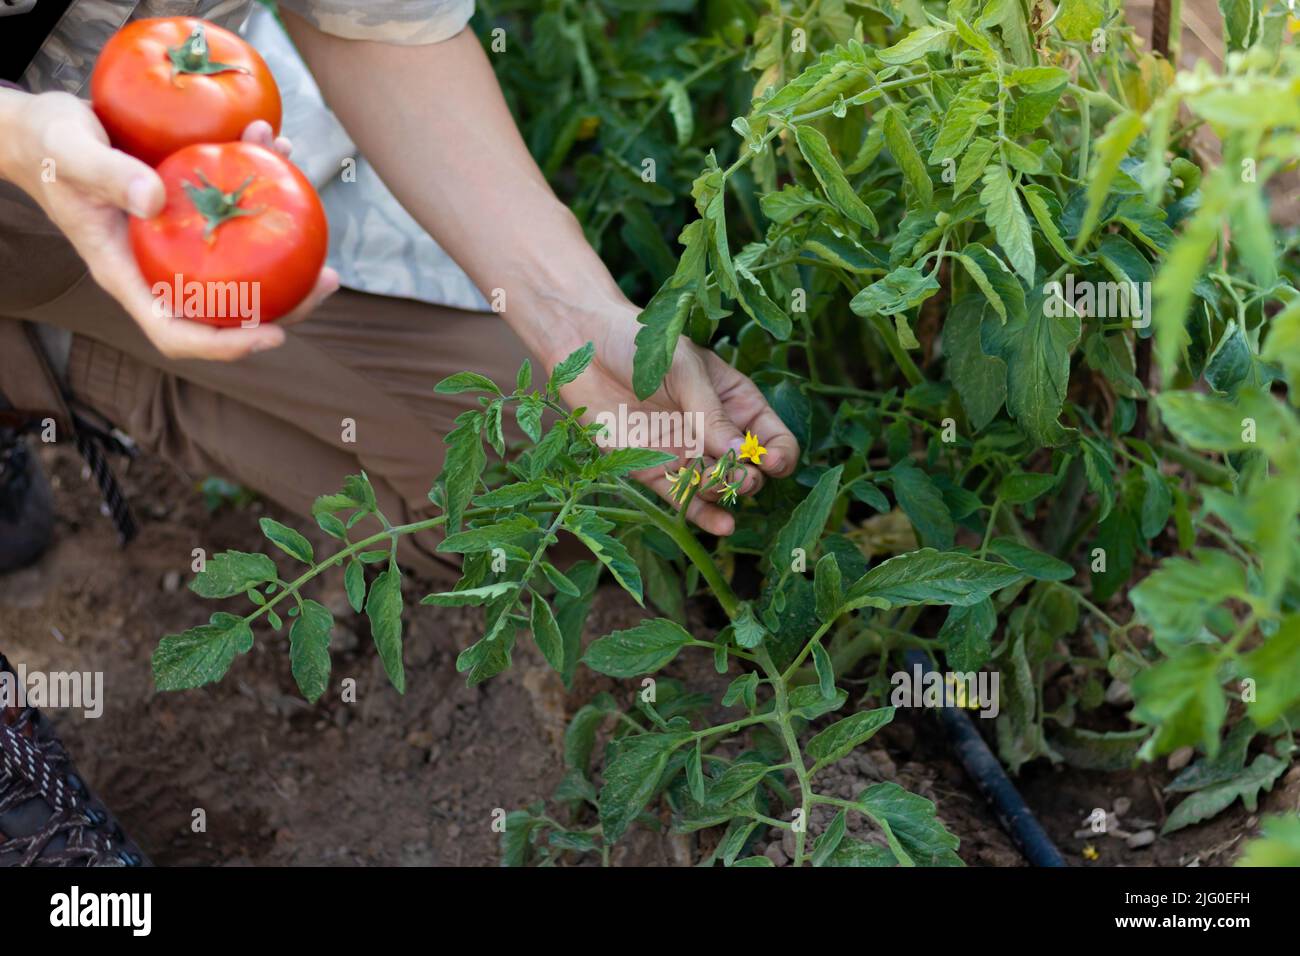 Draufsicht auf einen jungen Mann, der im Sommer Tomaten in der Hand hält und die neuen Blumen aus der Pflanze überprüft Stockfoto